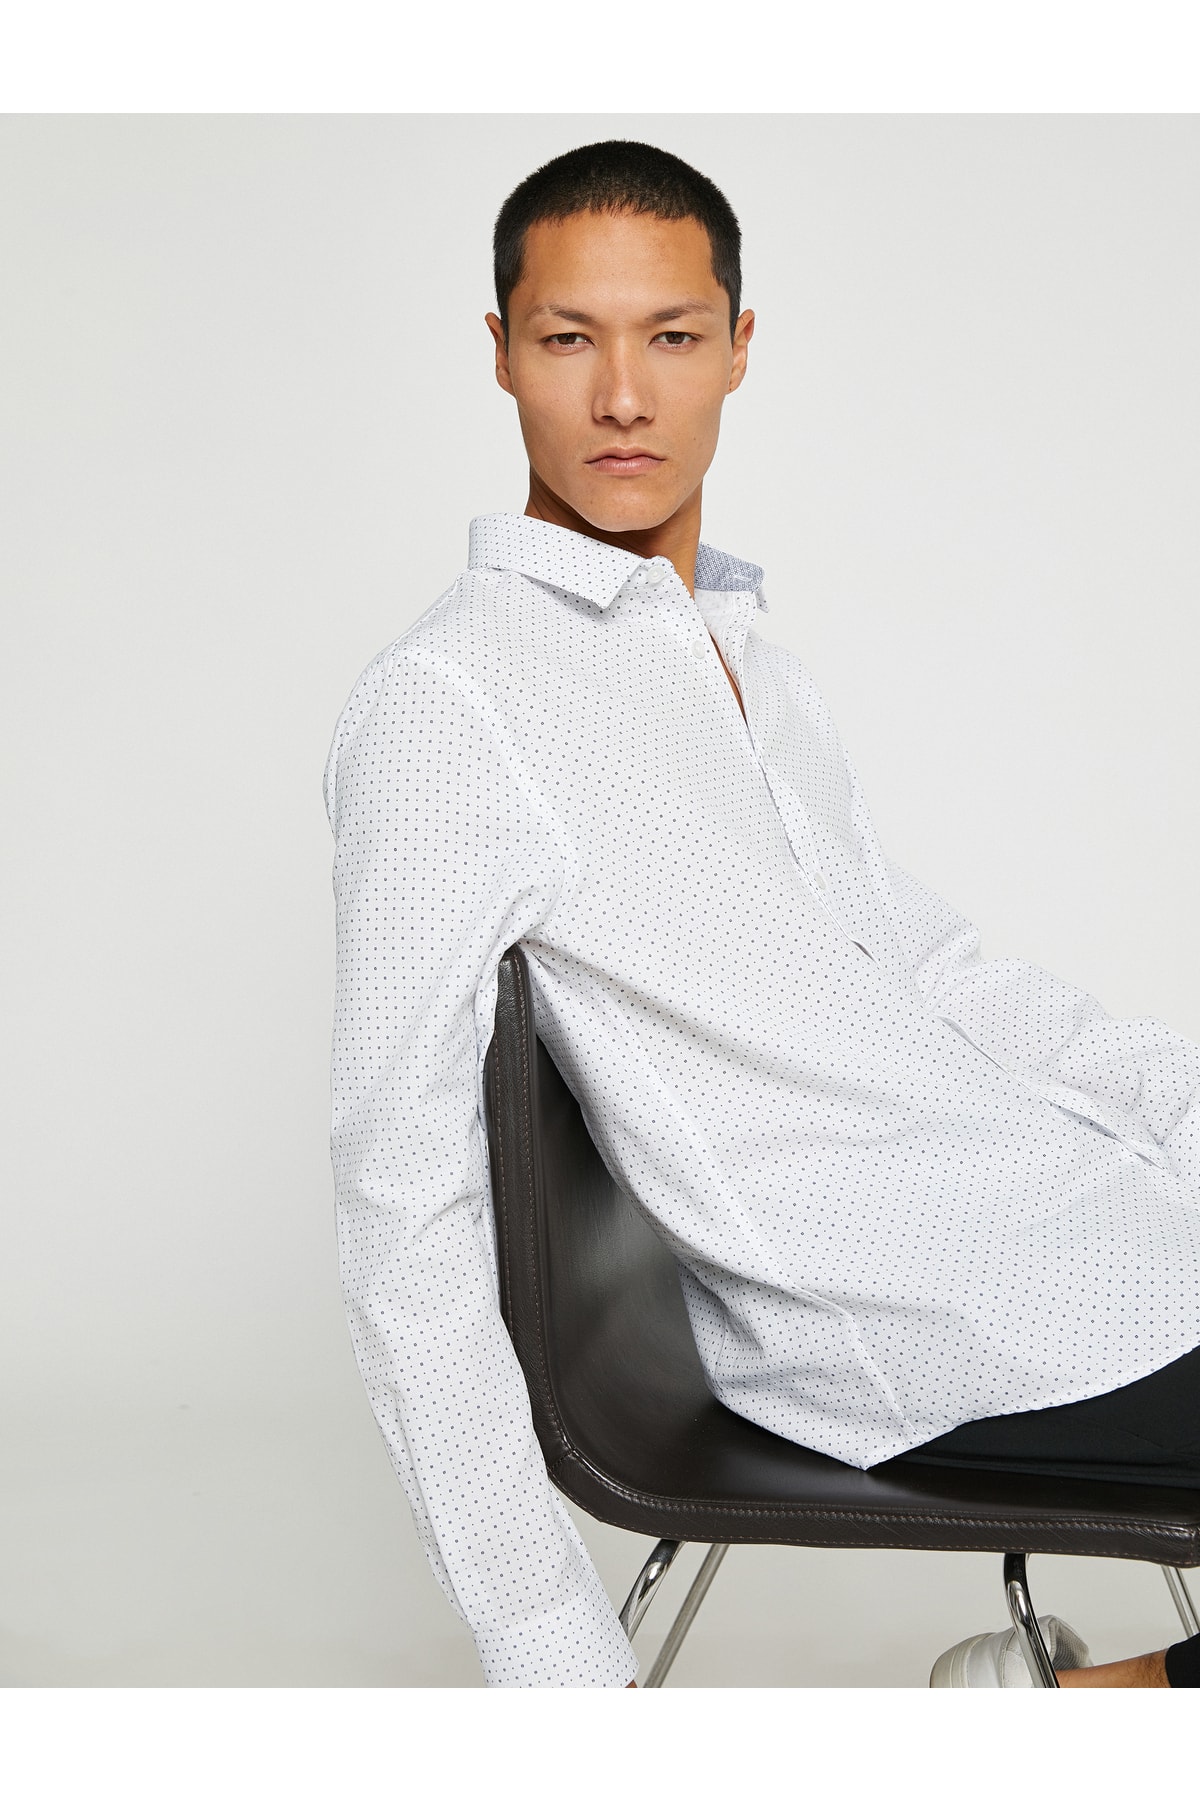 Базовая рубашка Slim Fit с классическим воротником и длинным рукавом Koton, белый базовая рубашка slim fit белый